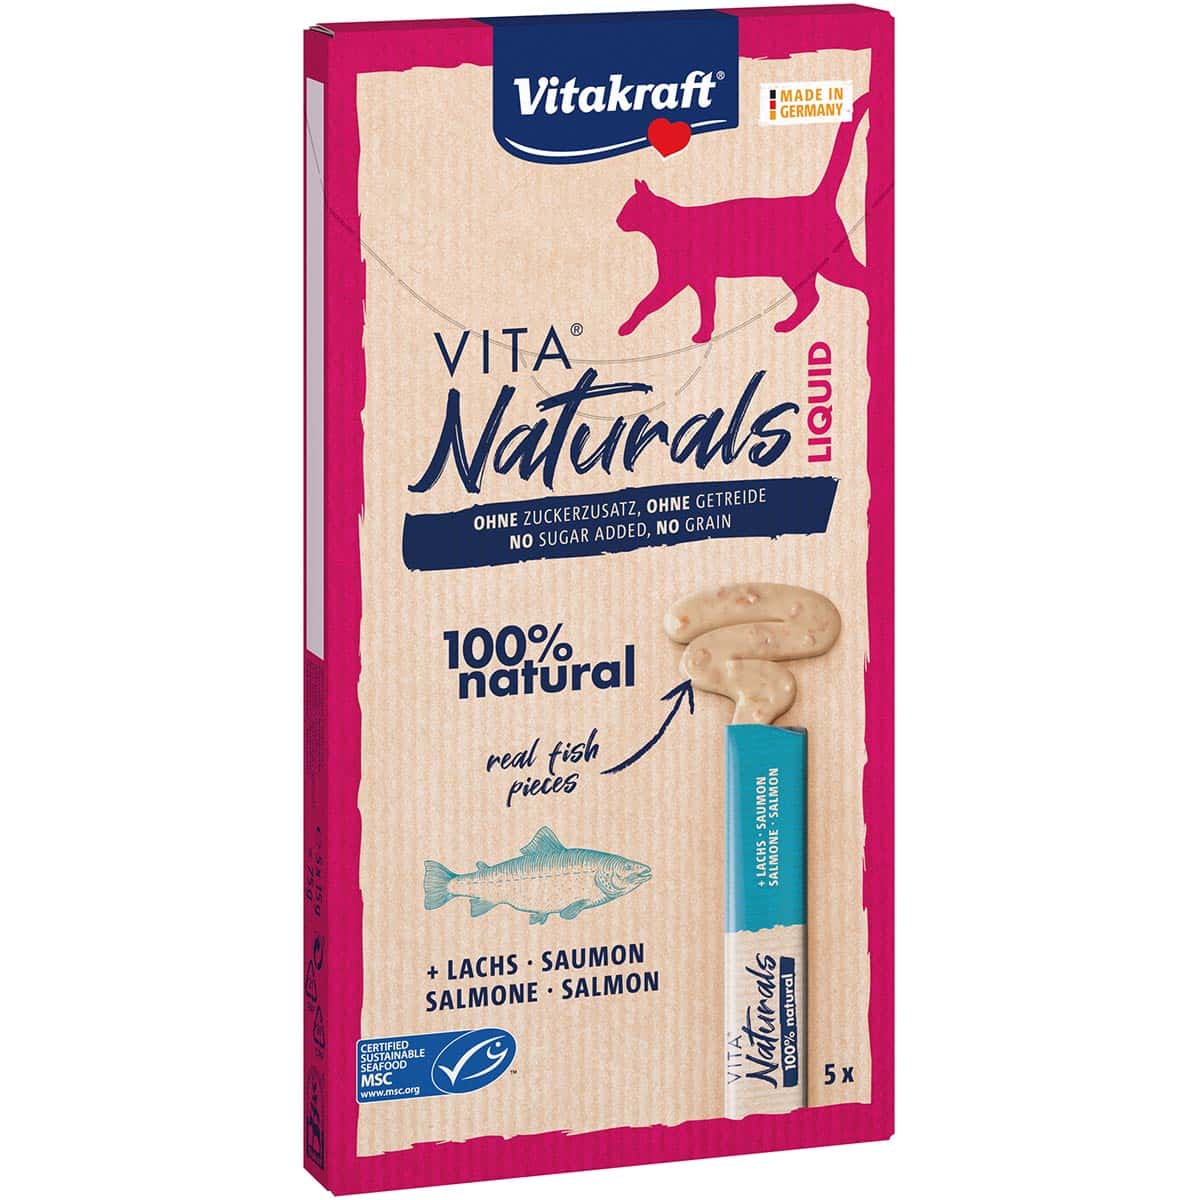 Vitakraft Vita Naturals Liquid Snack Lachs 5 St